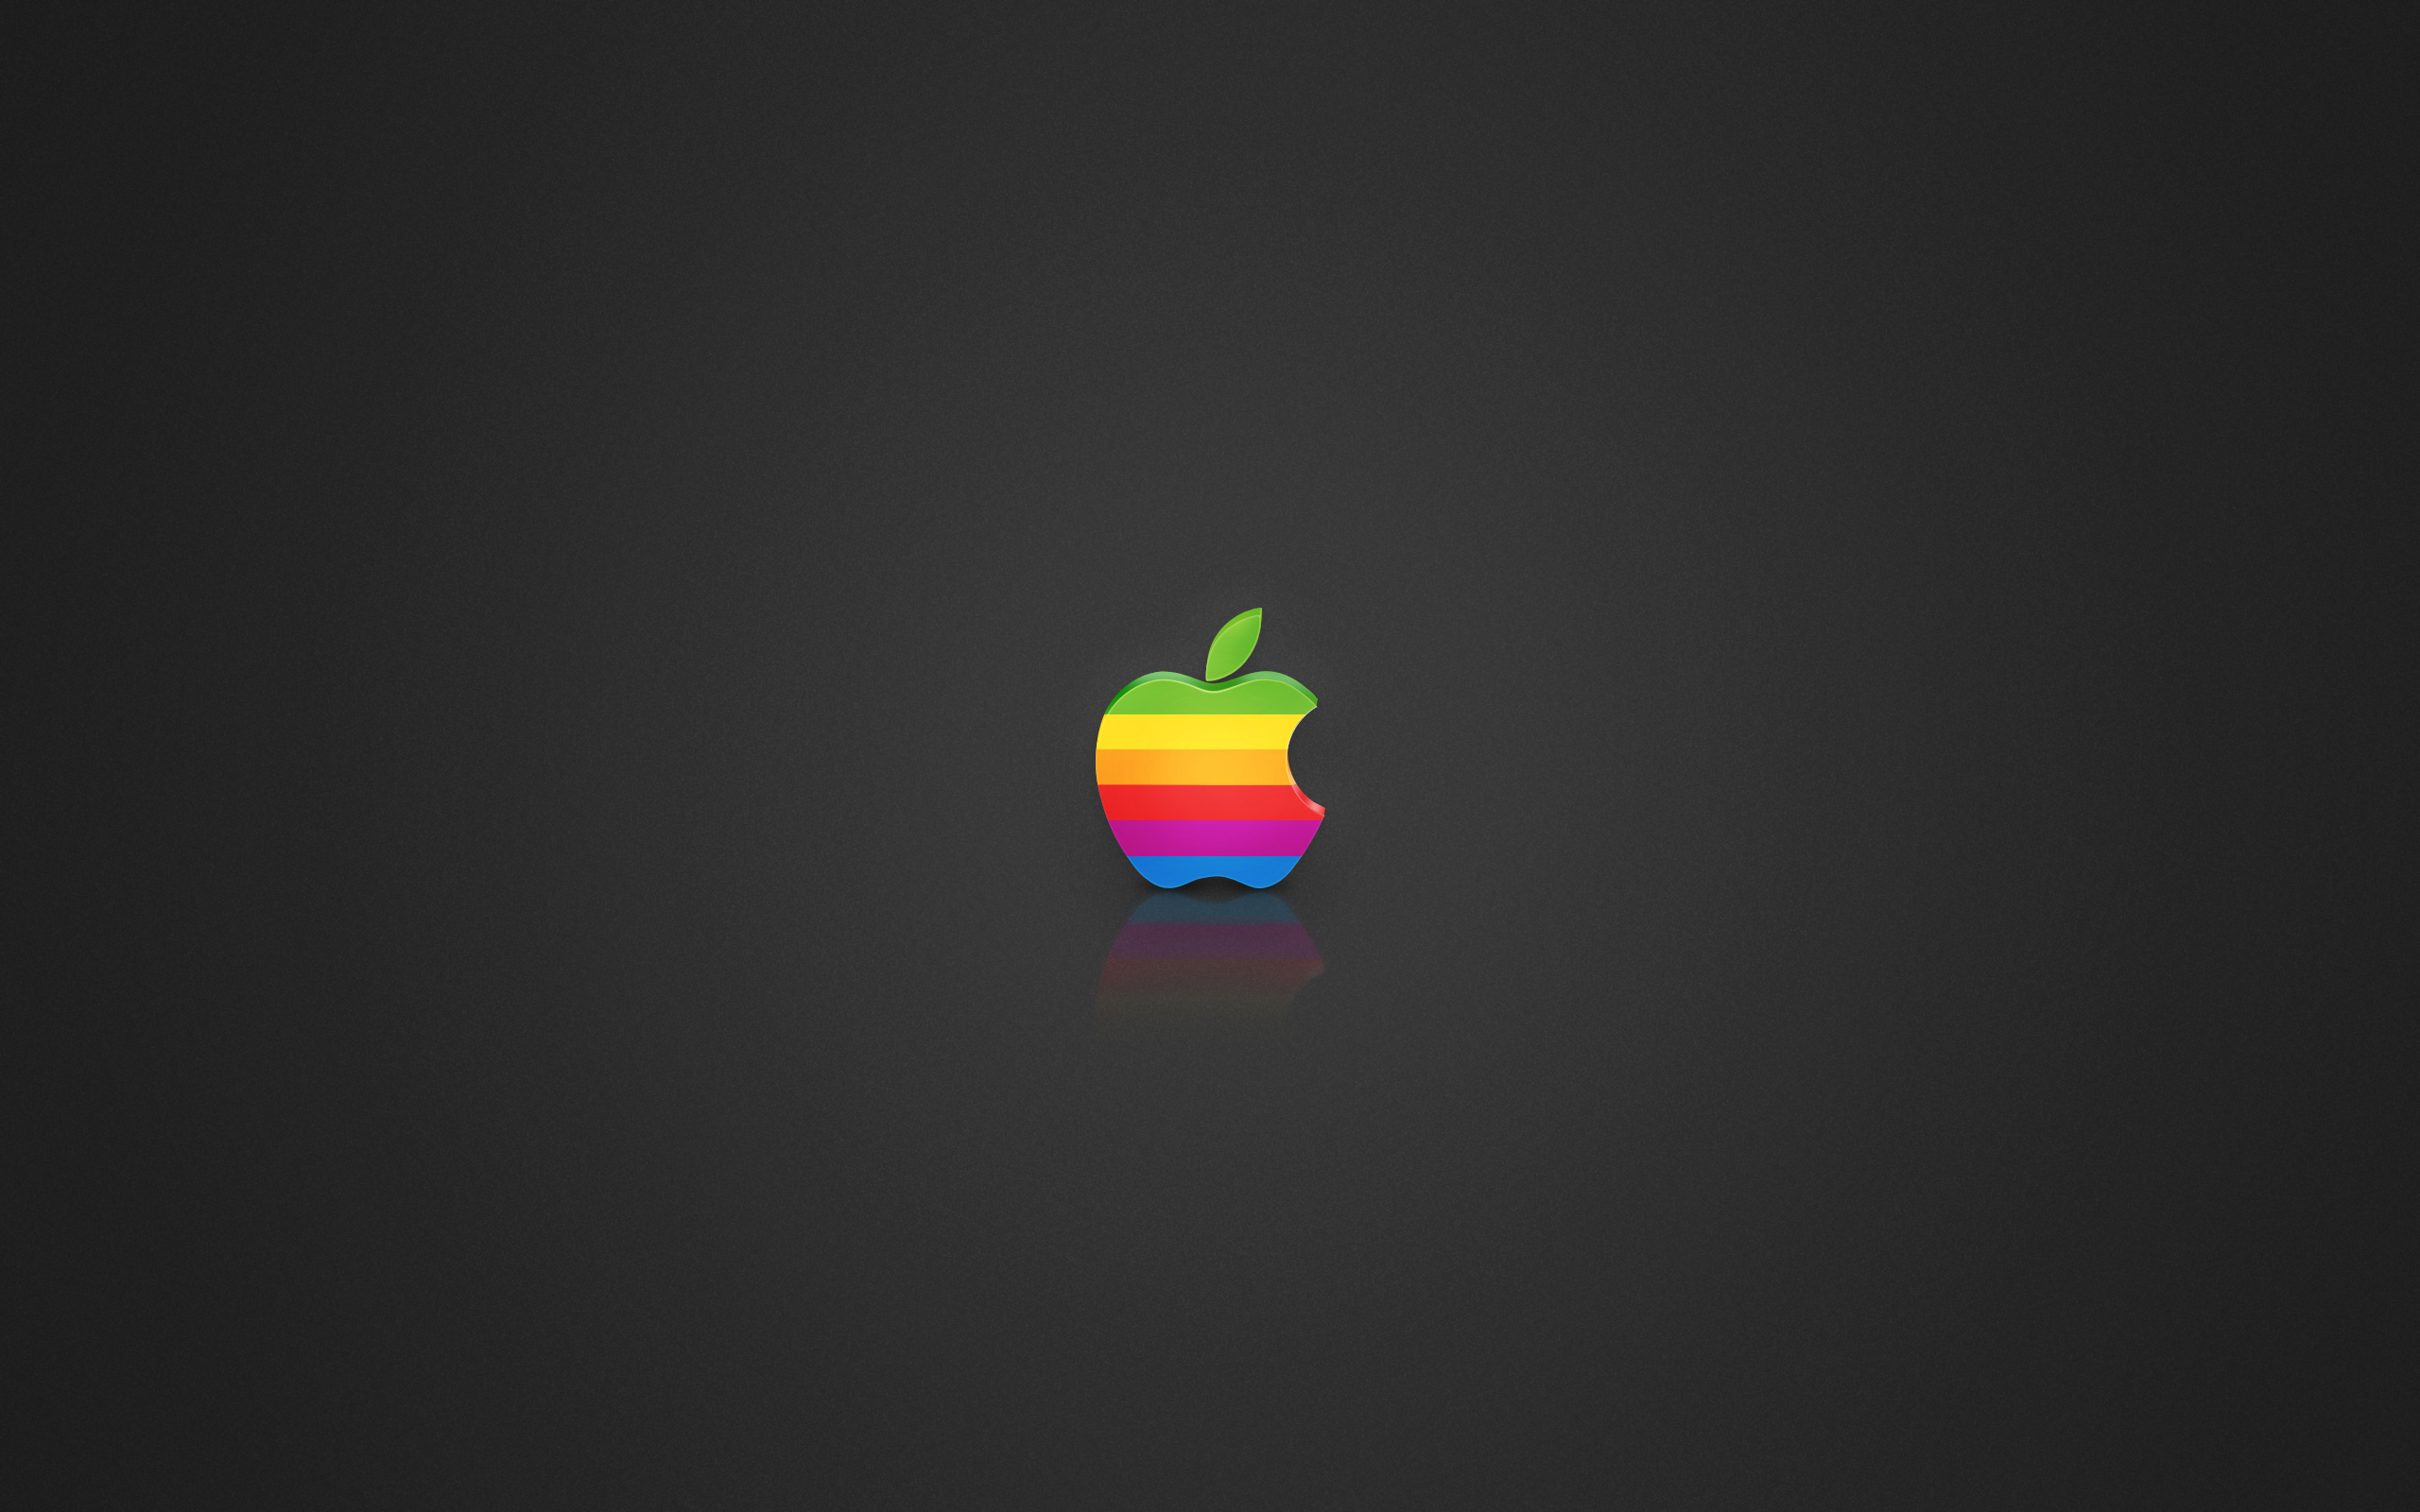 Coloured Apple logo wallpapers Coloured Apple logo stock photos